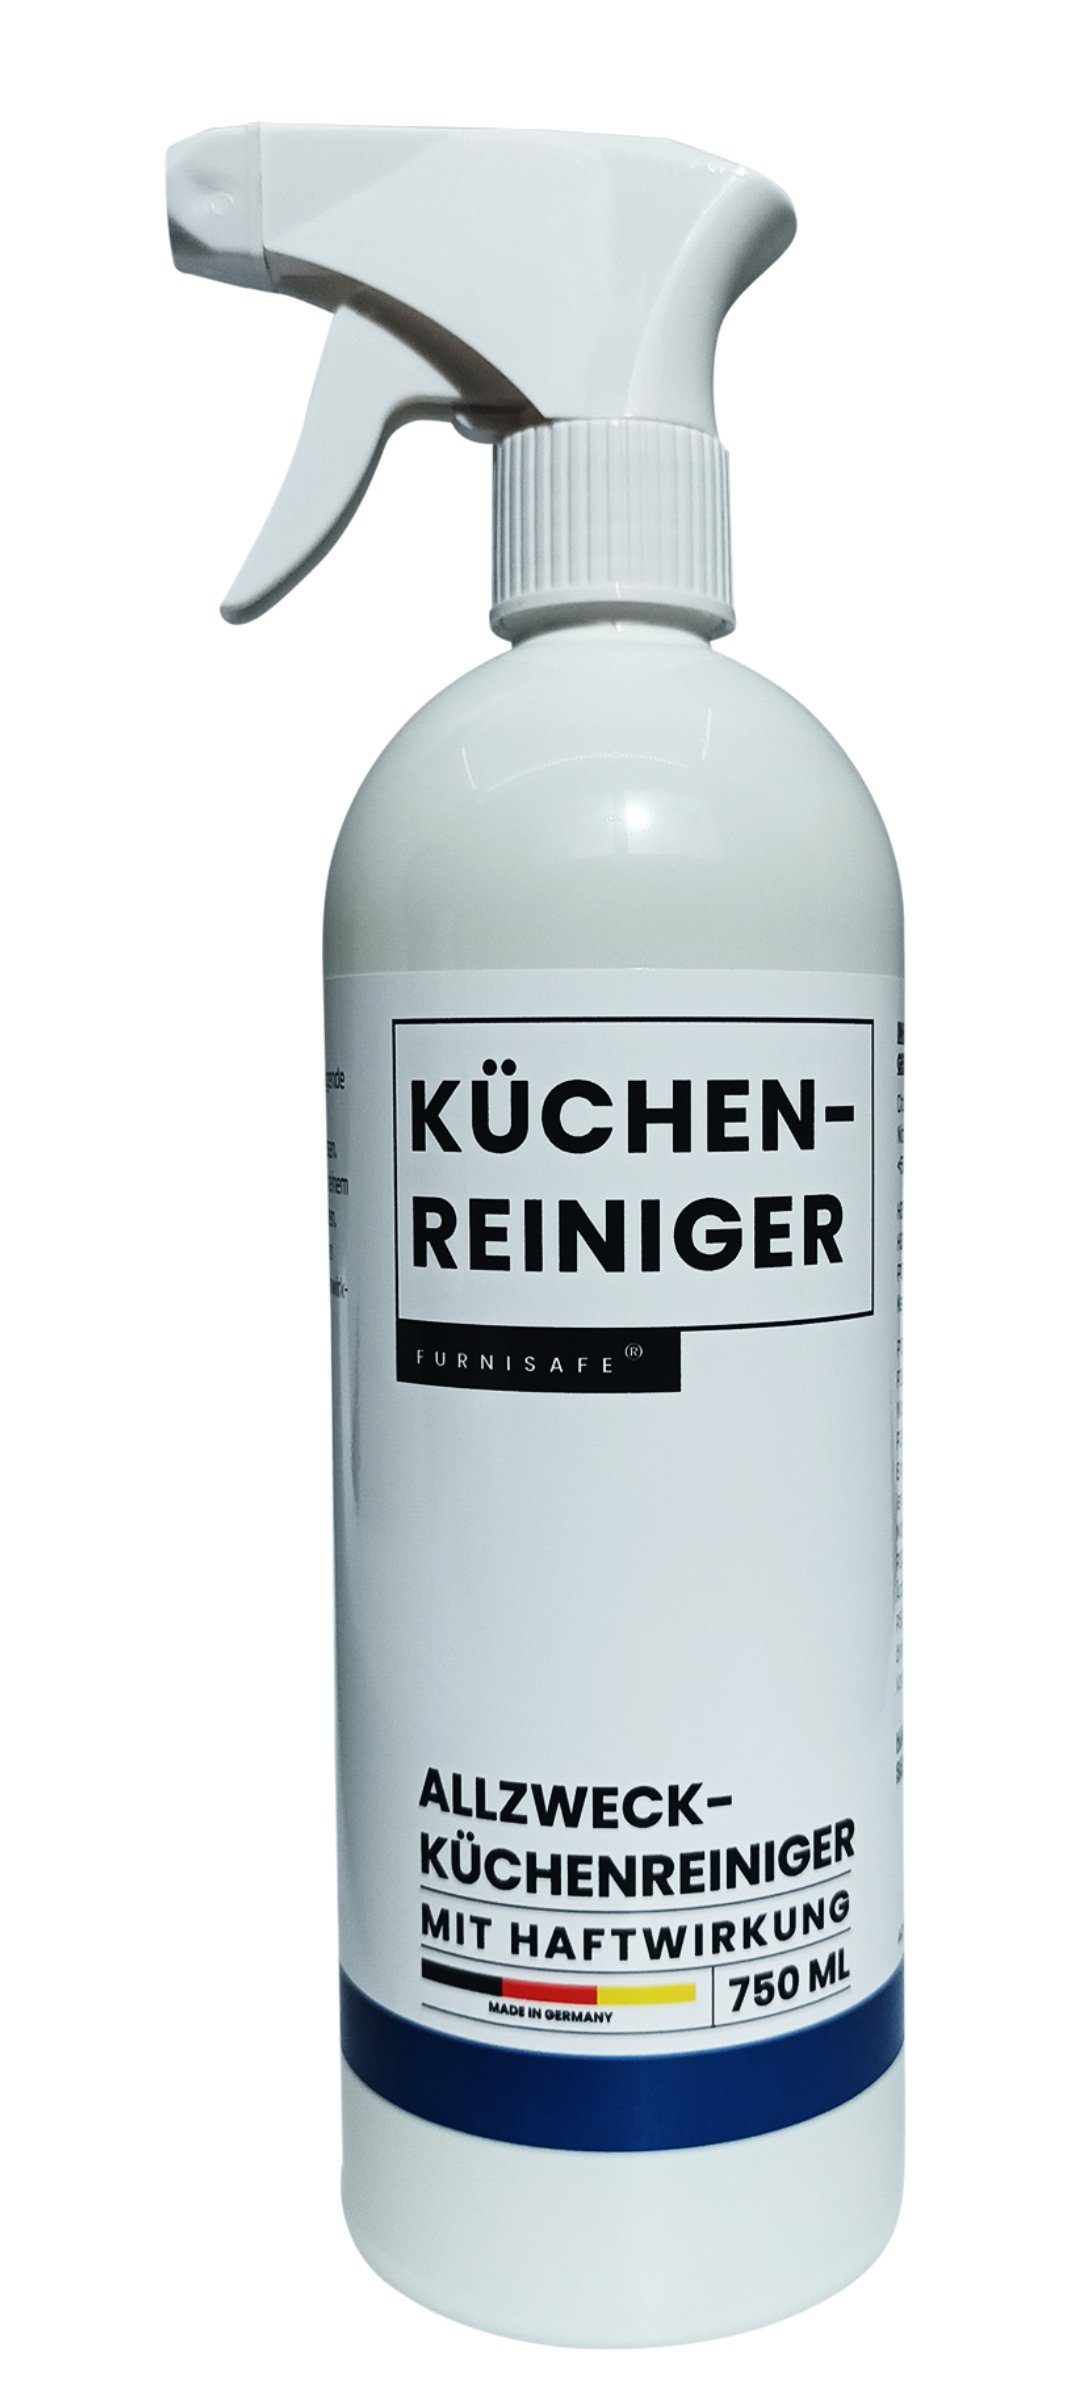 in - Küchenreiniger Küchenreiniger Germany FurniSafe Allzweckreinger 750ml - FurniSafe Made